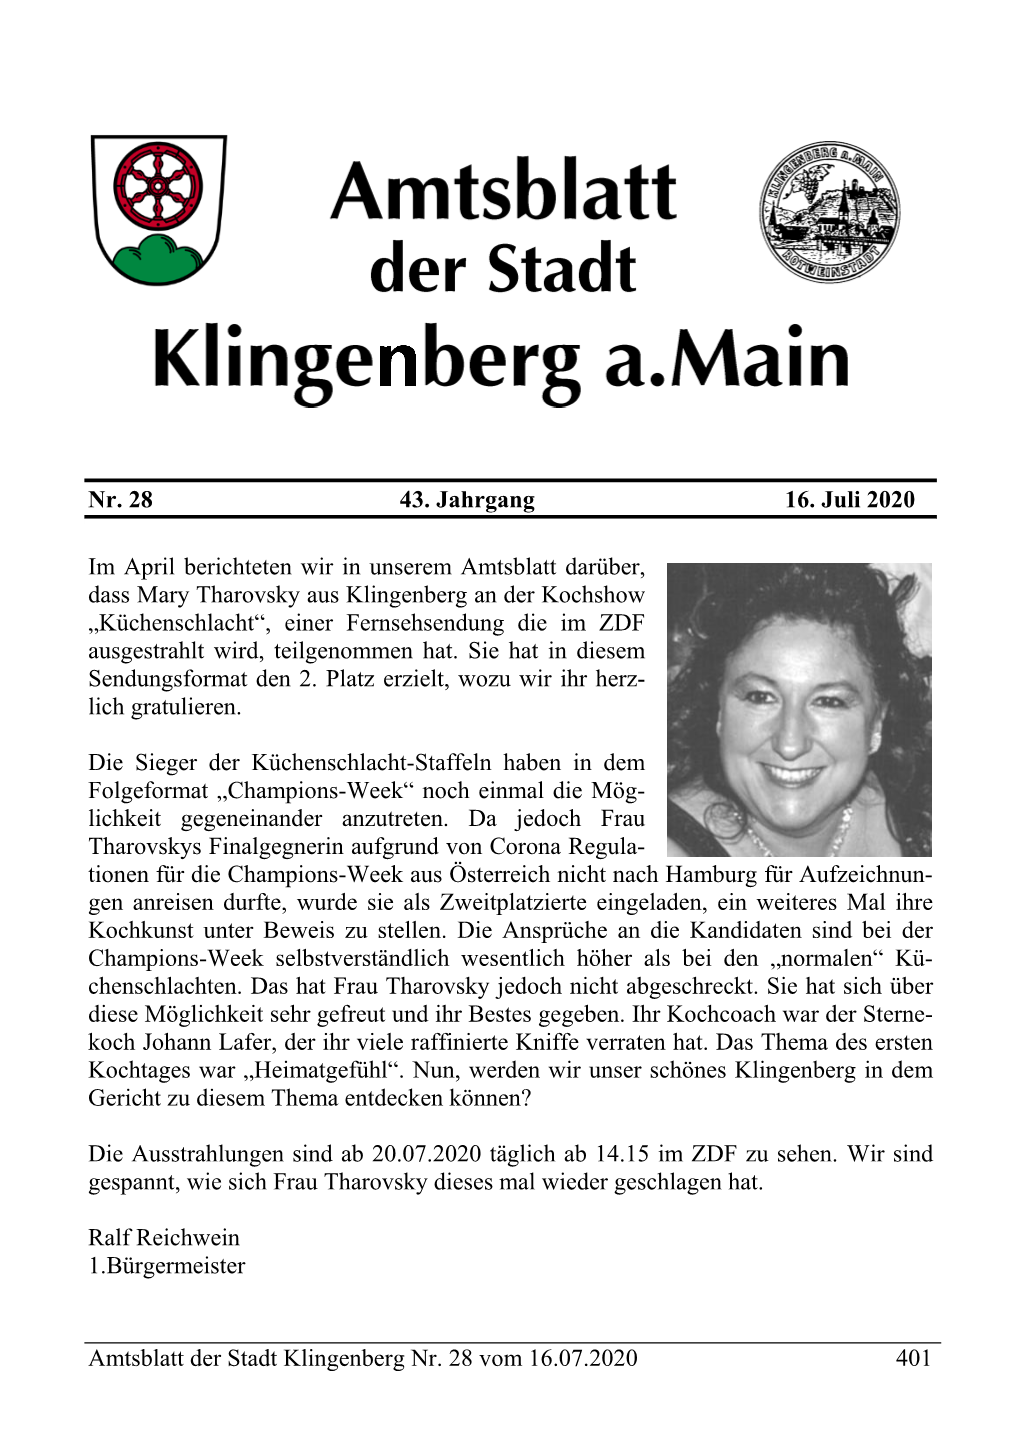 Amtsblatt Der Stadt Klingenberg Nr. 28 Vom 16.07.2020 401 Nr. 28 43